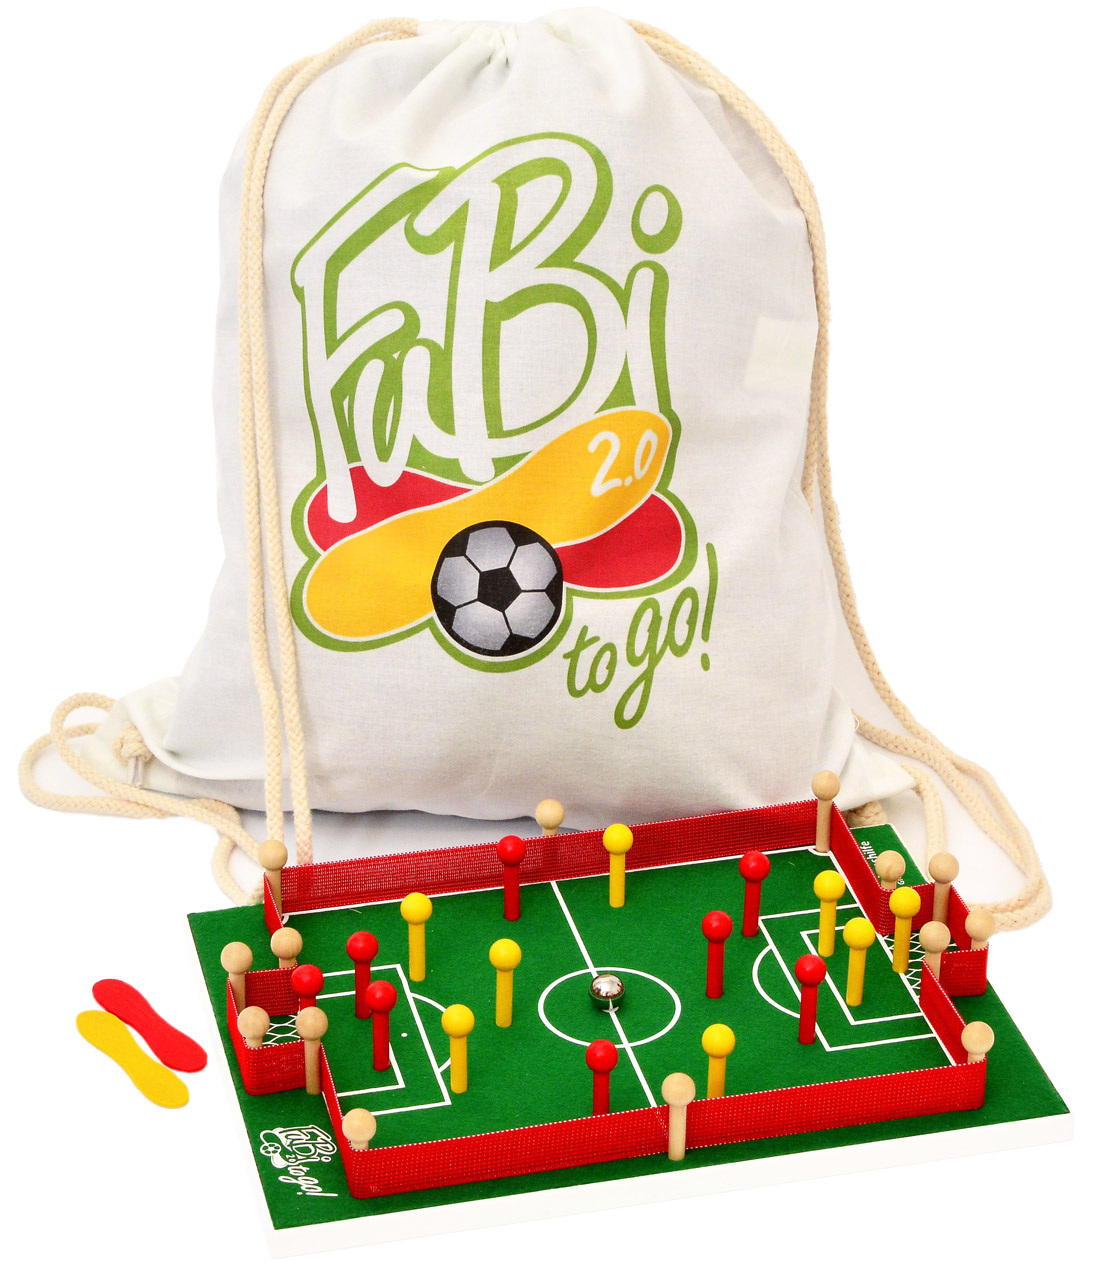 FuBi-to-go-Fussball-Billard-Tischspiel-4058438520030-lafueliki